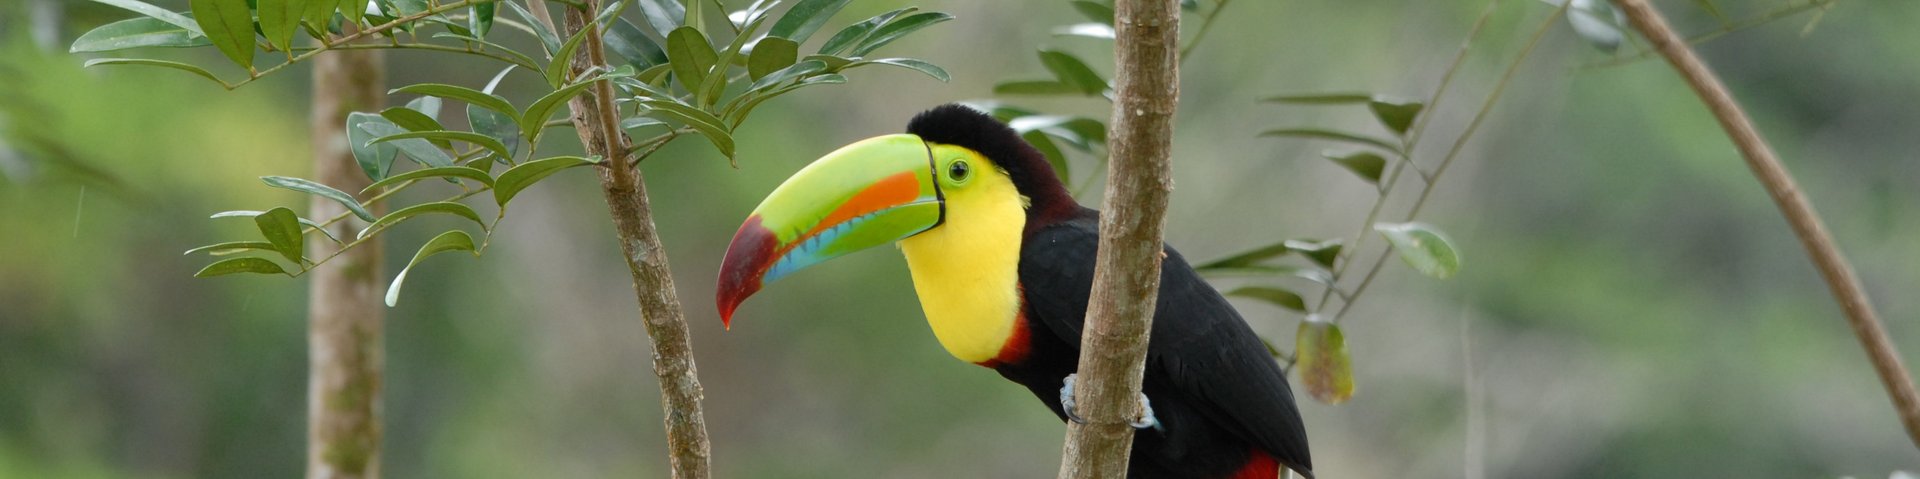 Tucan im Dschungel von Costa Rica